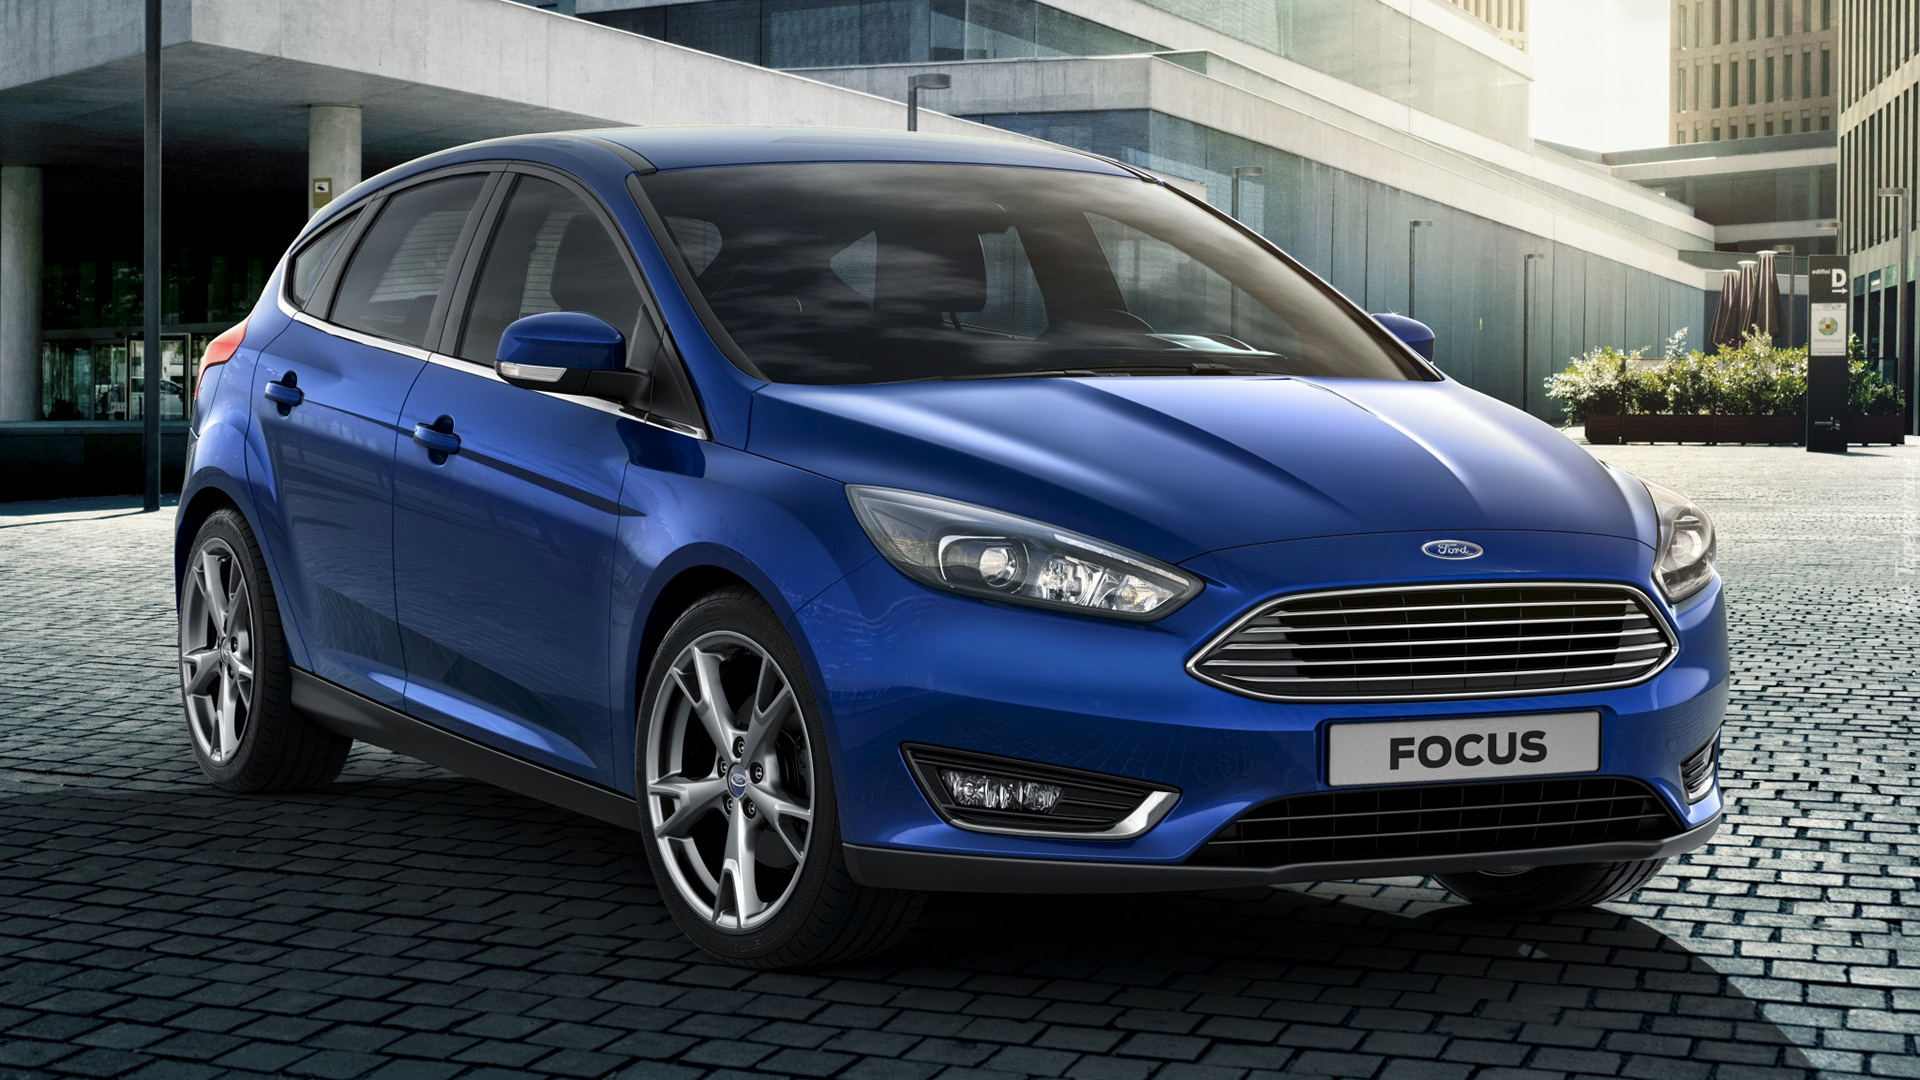 Niebieski, Ford Focus